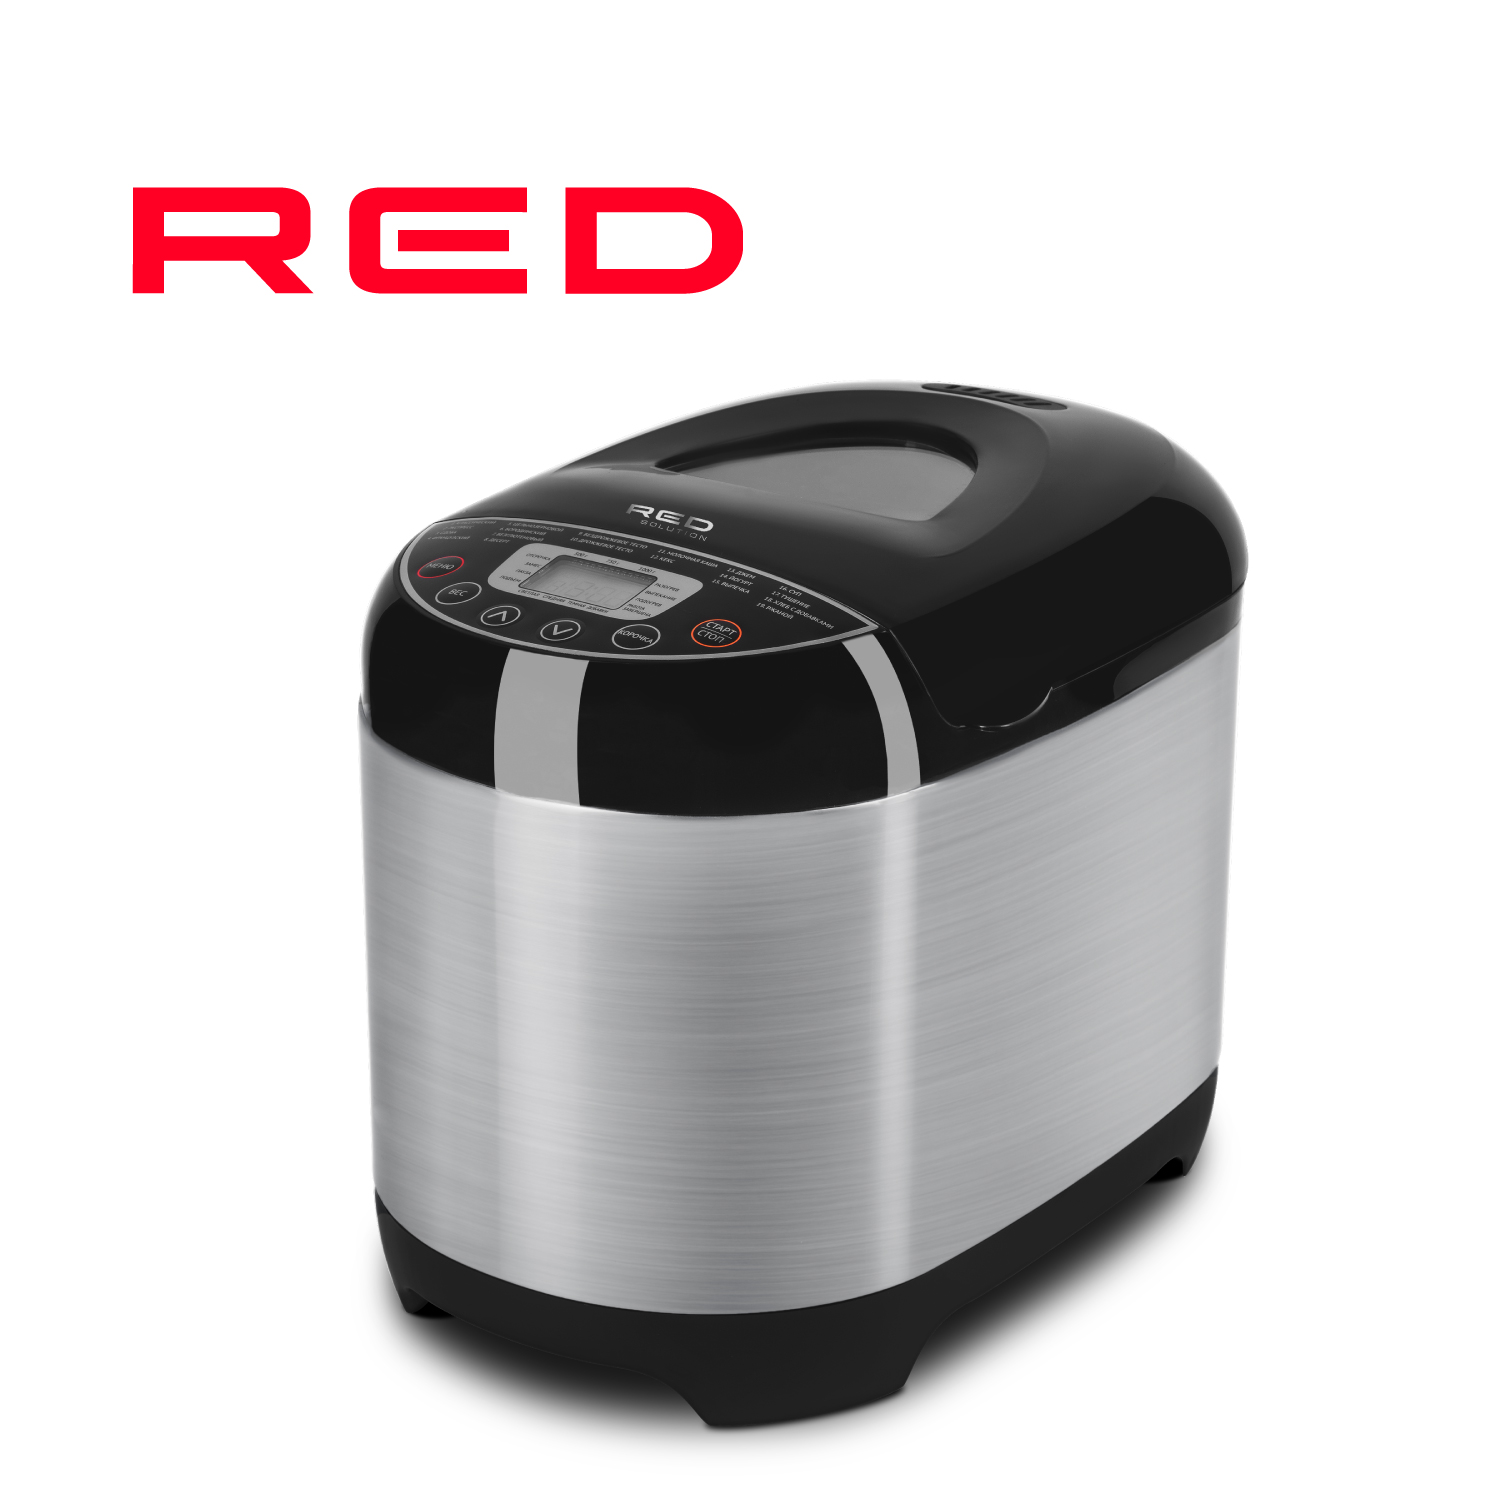 Хлебопечка RED SOLUTION RBM-M1911 серебристый, серый, черный хлебопечка red solution rbm m1919 серебристый серый